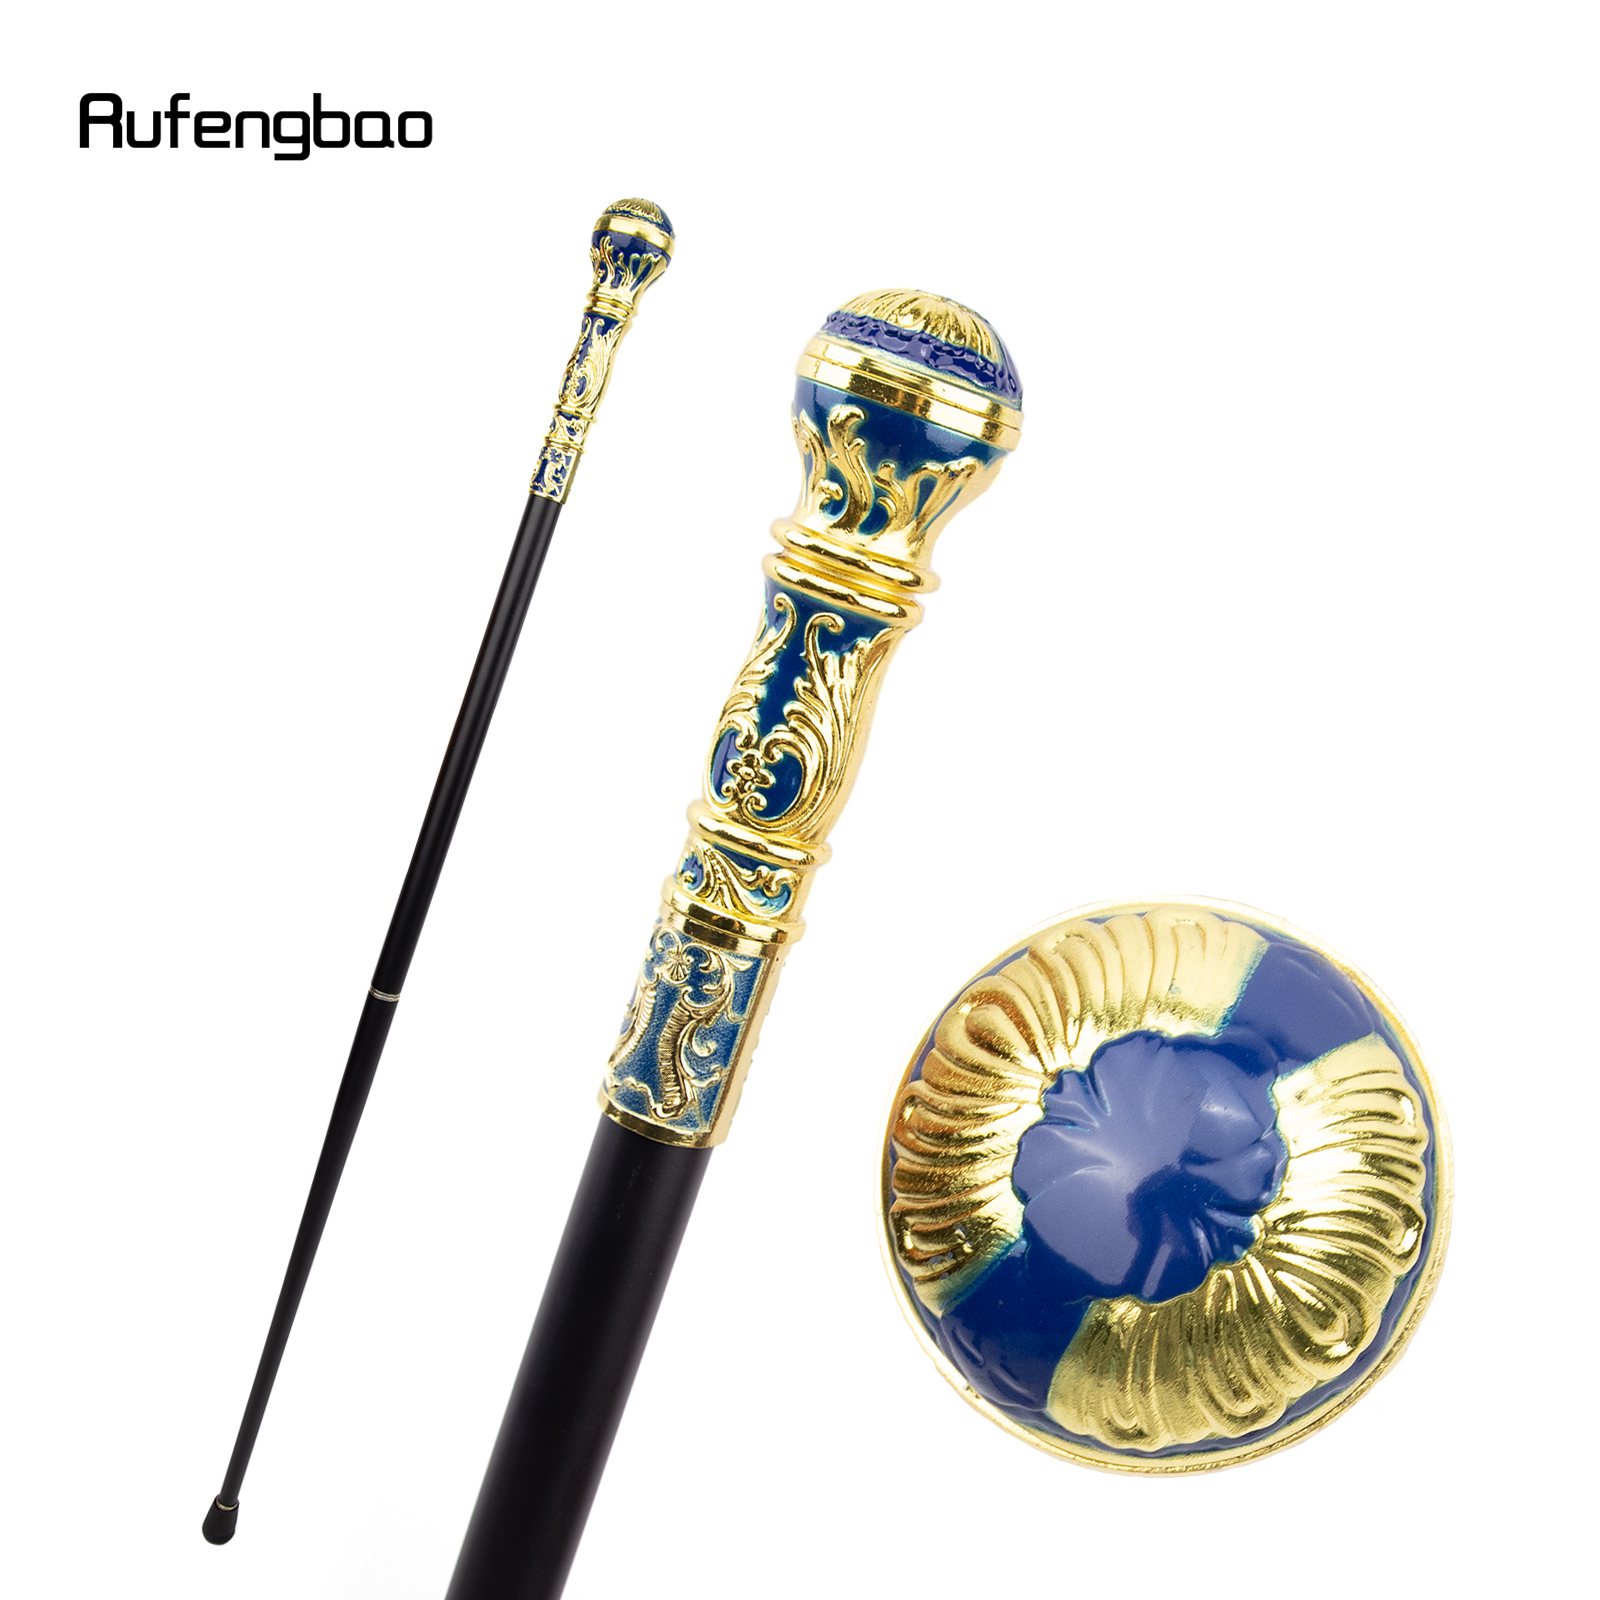 

Bâton de marche de mode de poignée ronde de luxe bleu doré pour la canne de marche décorative de partie bâton de marche élégant de bouton de Crosier 93cm/36.6in